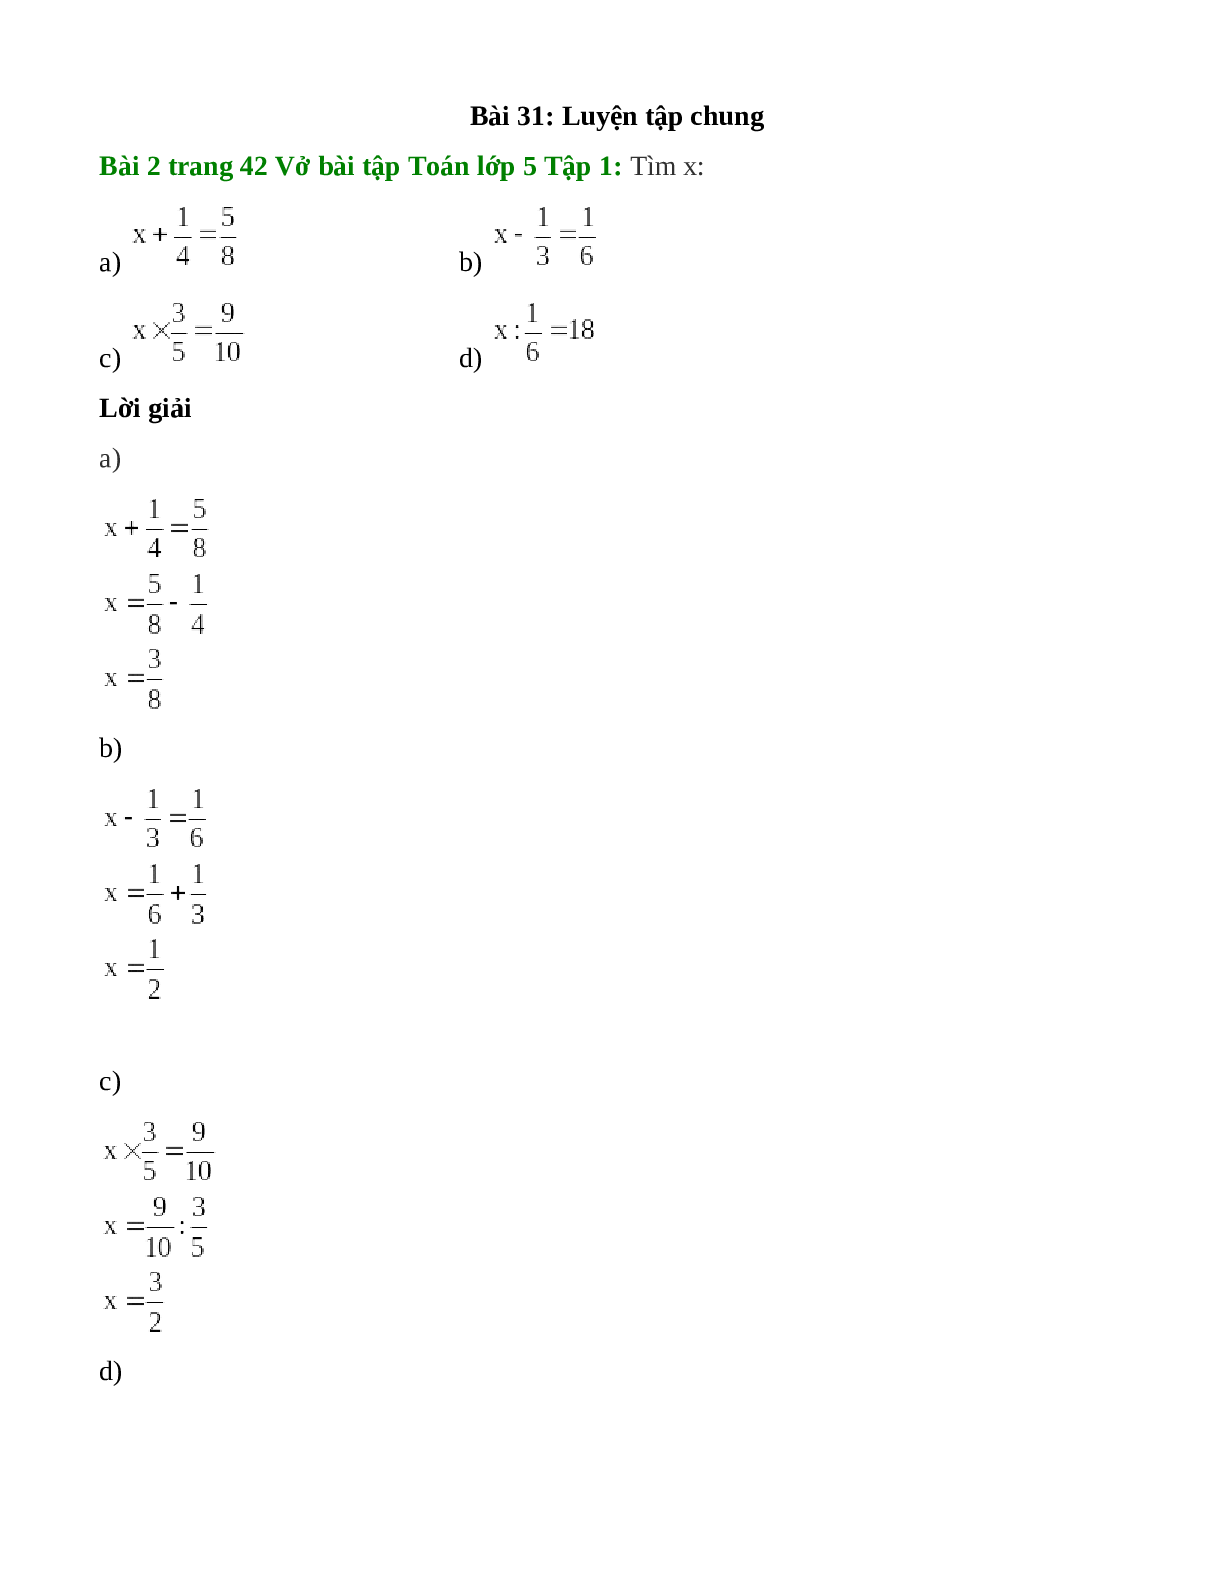 Tìm x: x + 2/4 = 5/8 (trang 1)